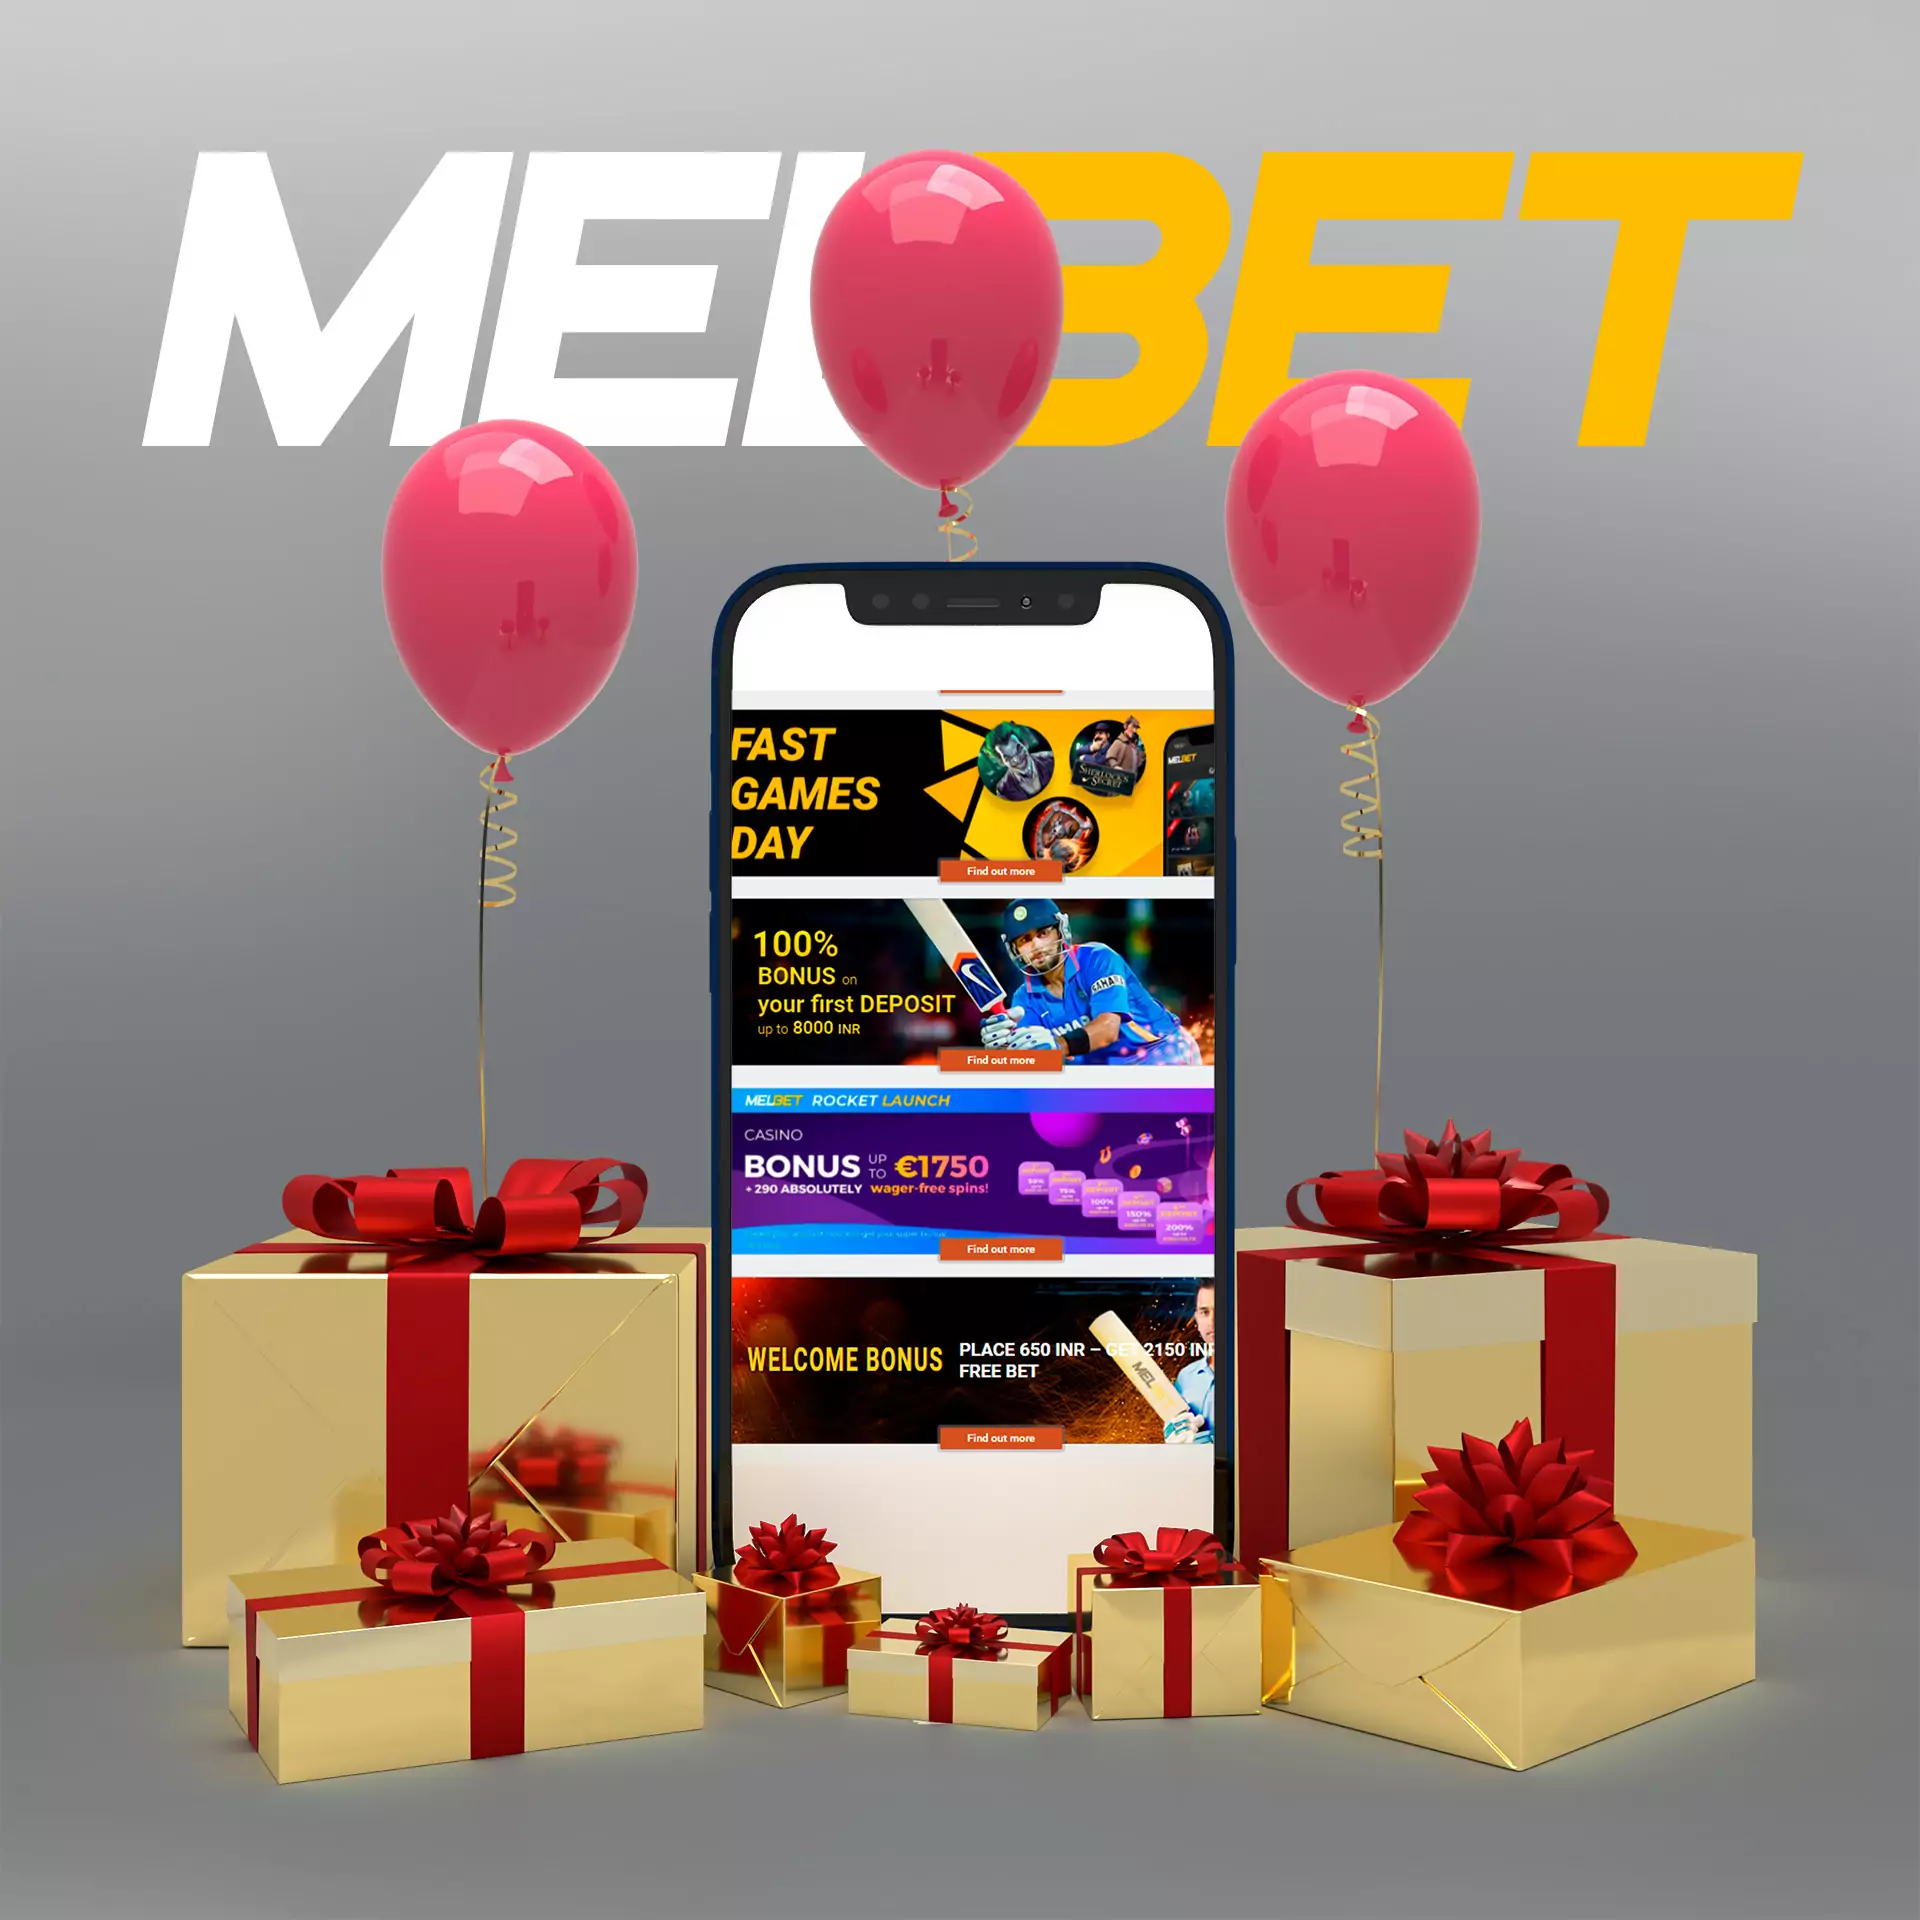 मोबाइल ऐप के माध्यम से Melbet के लिए साइन अप करें और सट्टेबाजी के लिए बोनस प्राप्त करें।